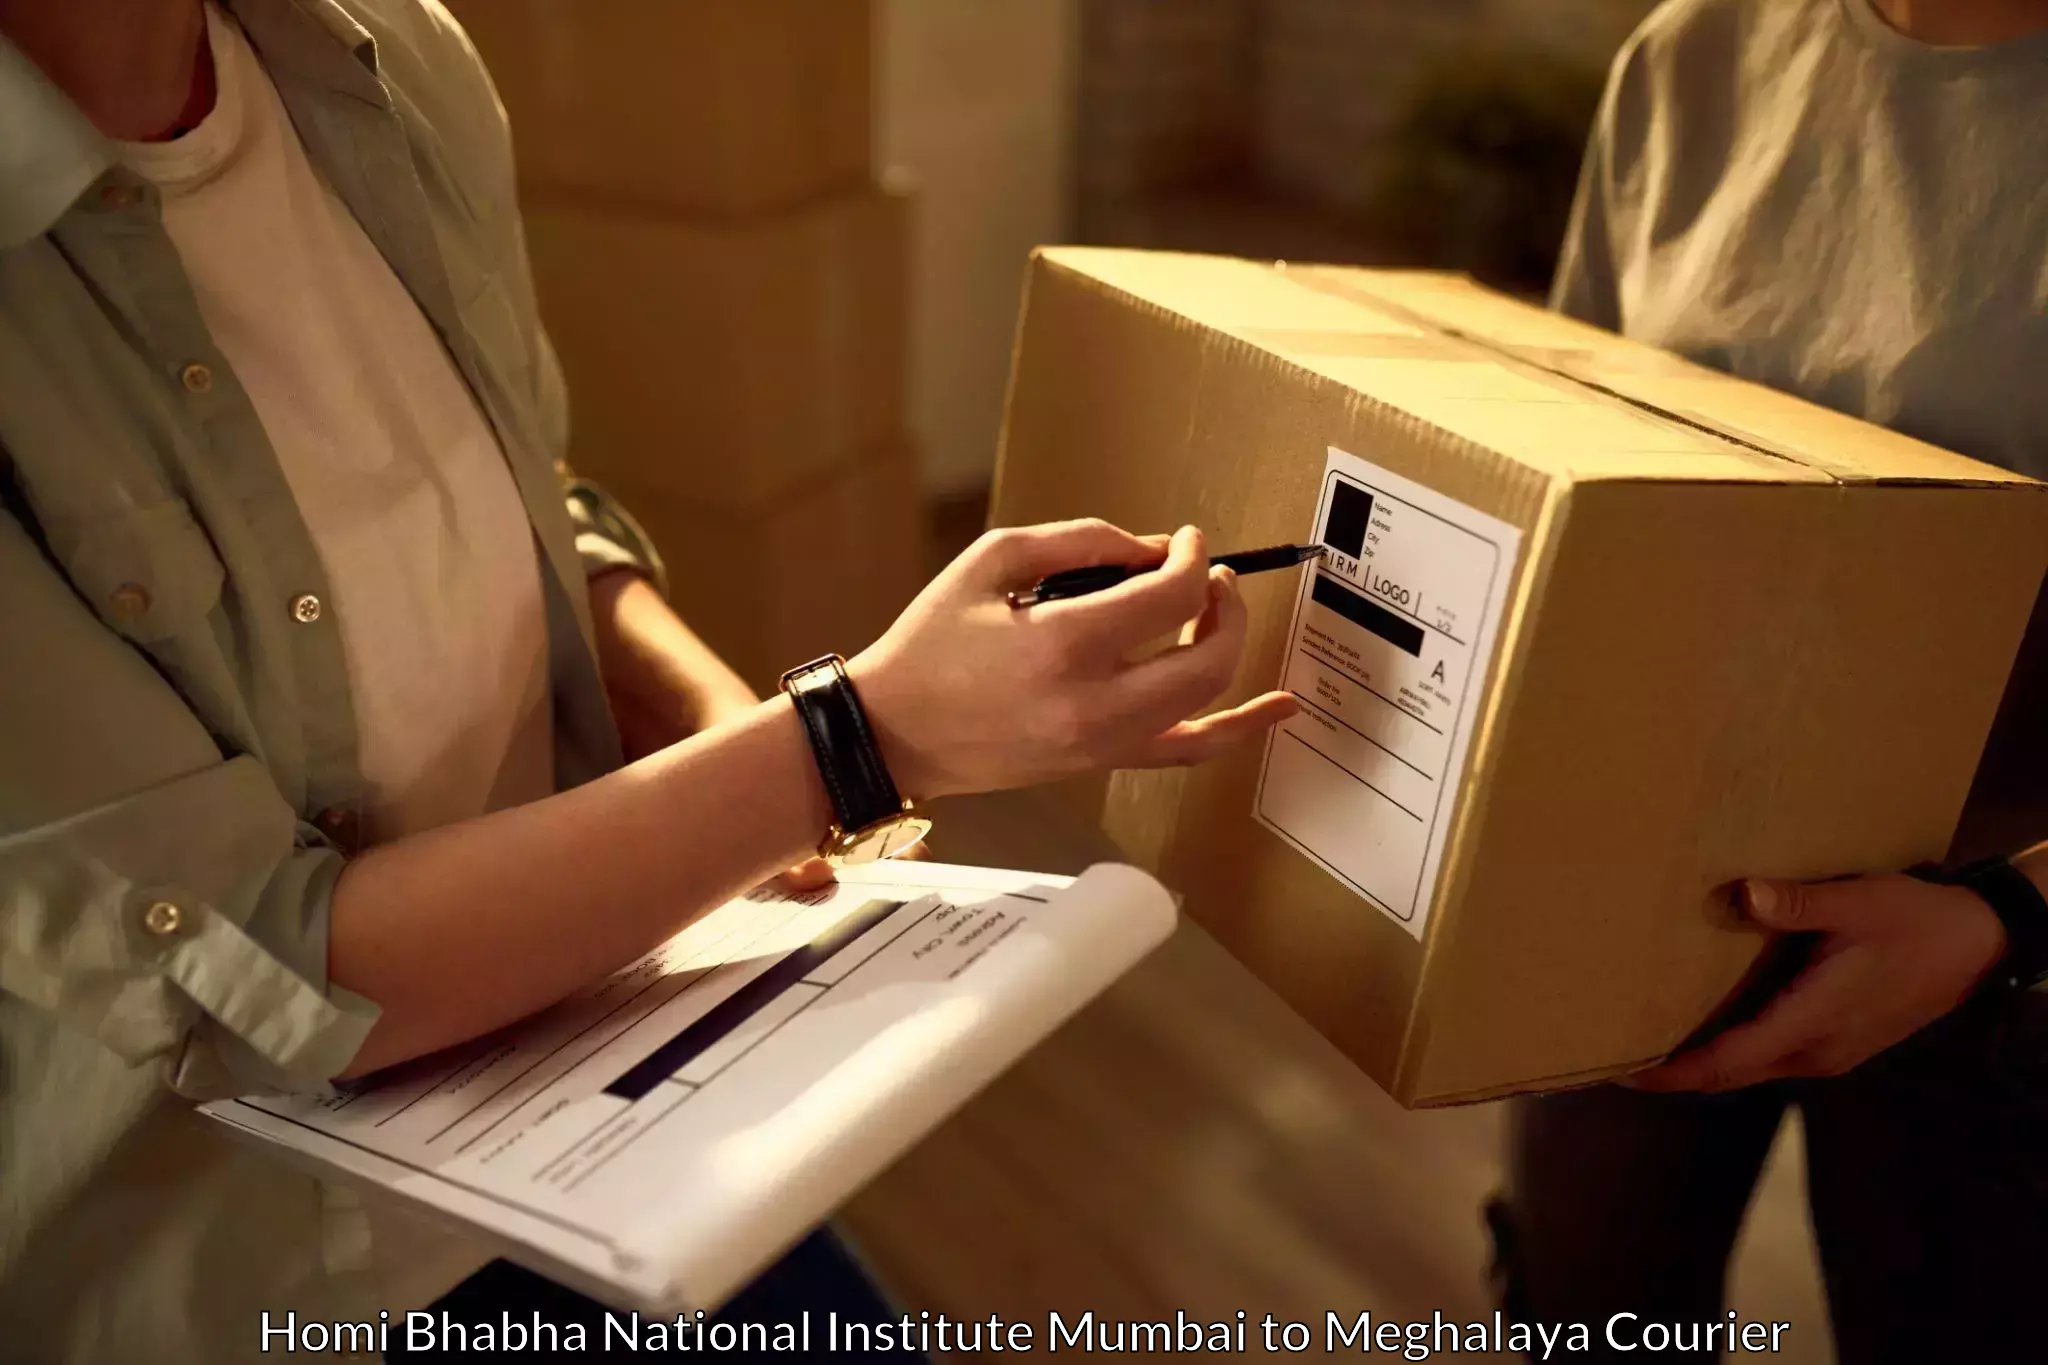 Express logistics providers Homi Bhabha National Institute Mumbai to Nongpoh